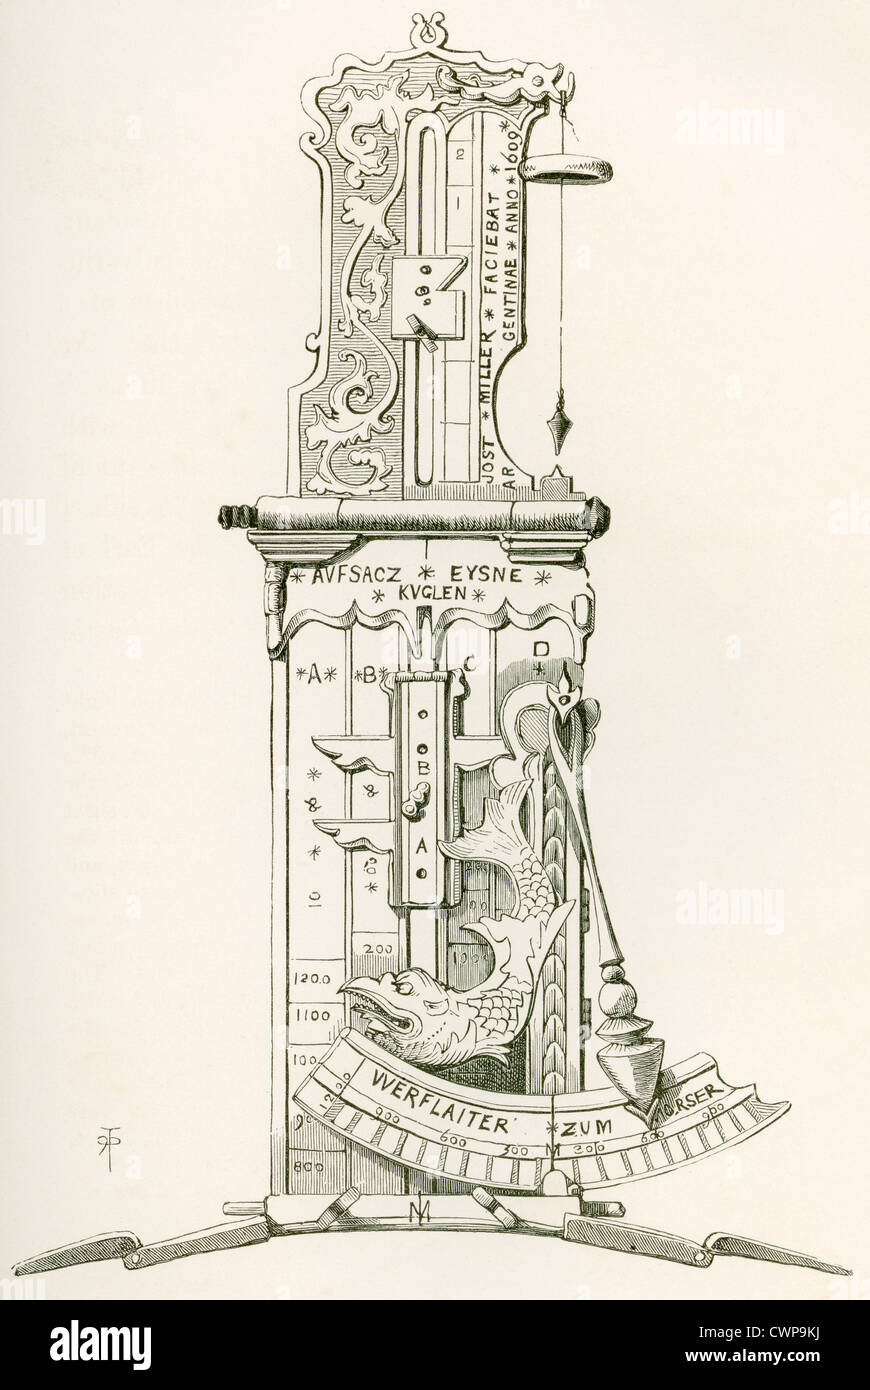 Tangente-Visier für eine englische Kanone, hergestellt 1609. From the British Army: ITS Origins, Progress and Equipment, veröffentlicht 1868. Stockfoto